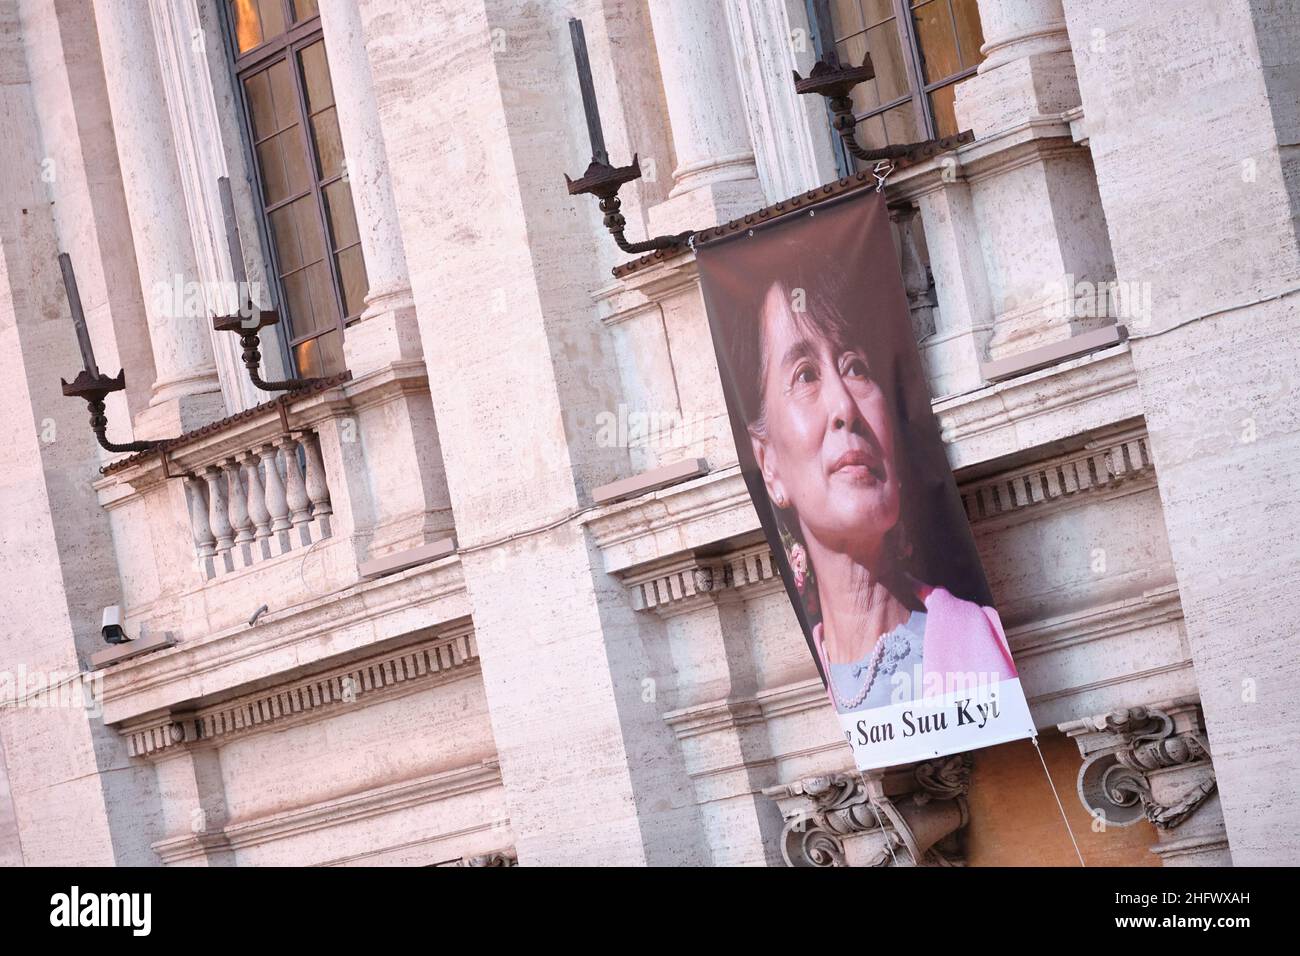 Mauro Scrobogna /LaPresse 16 marzo 2021 Roma, Italia News Capitol - solidarietà con il Myanmar nella foto: Aung San Suu Kyi è esposto in Piazza del Campidoglio come segno di solidarietà il leader del Myanmar arrestato dopo il colpo di Stato militare Foto Stock